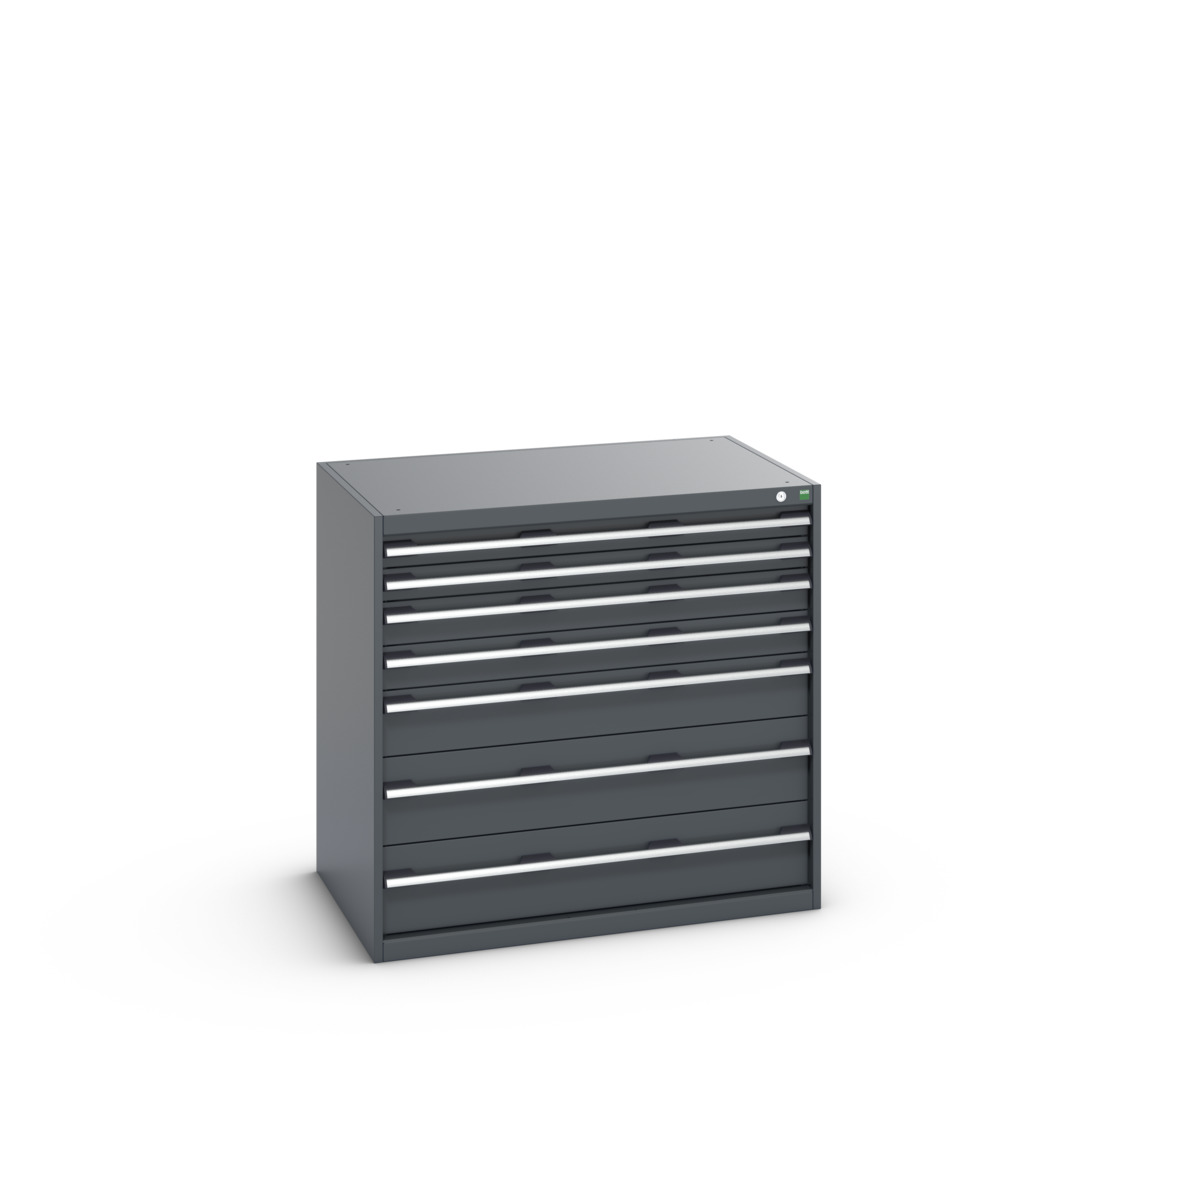 40029021.77V - cubio drawer cabinet